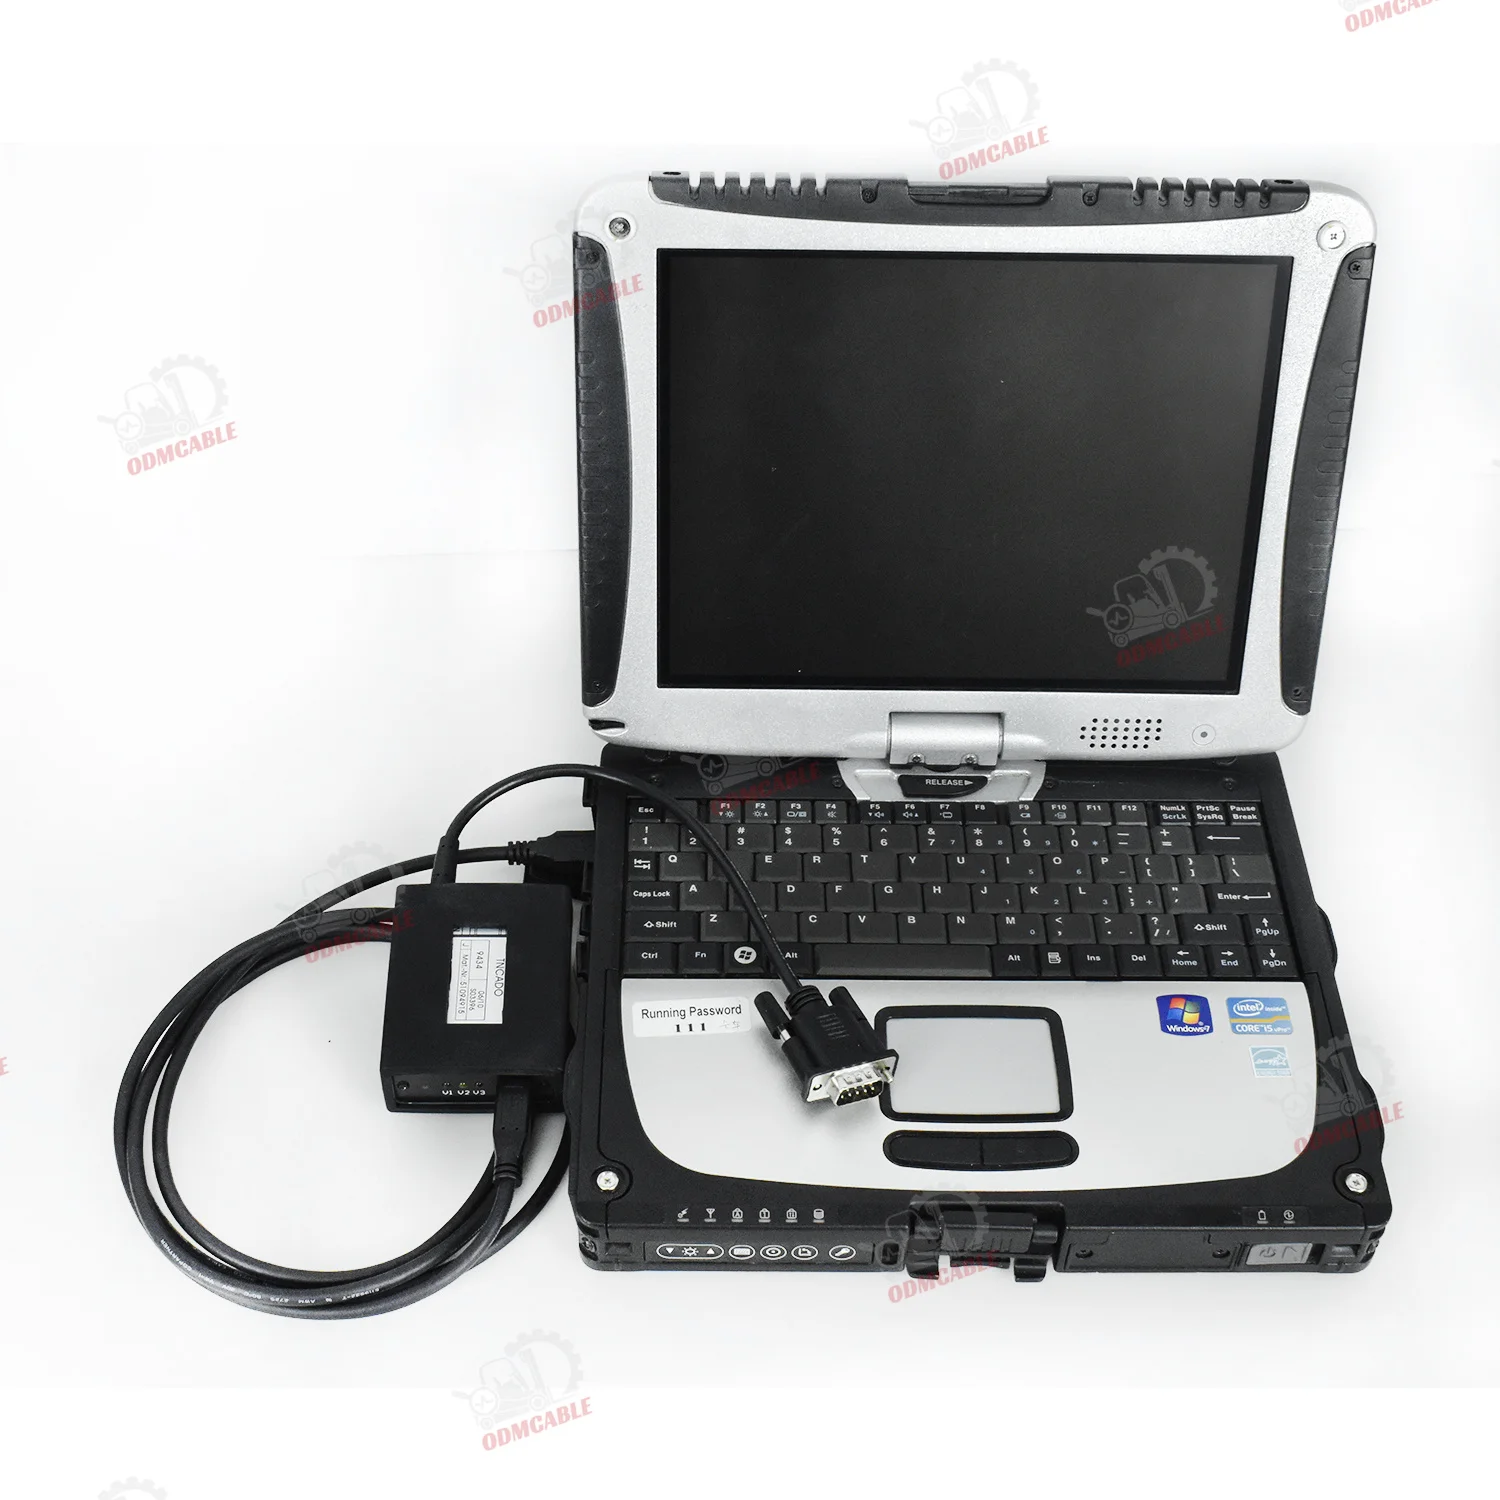 

Auto Forklift Scan JUDIT-4 Jungheinrich Diagnostic Scanner Kit Judit Box Incado with Judit ET &Judit SH CF19 laptop